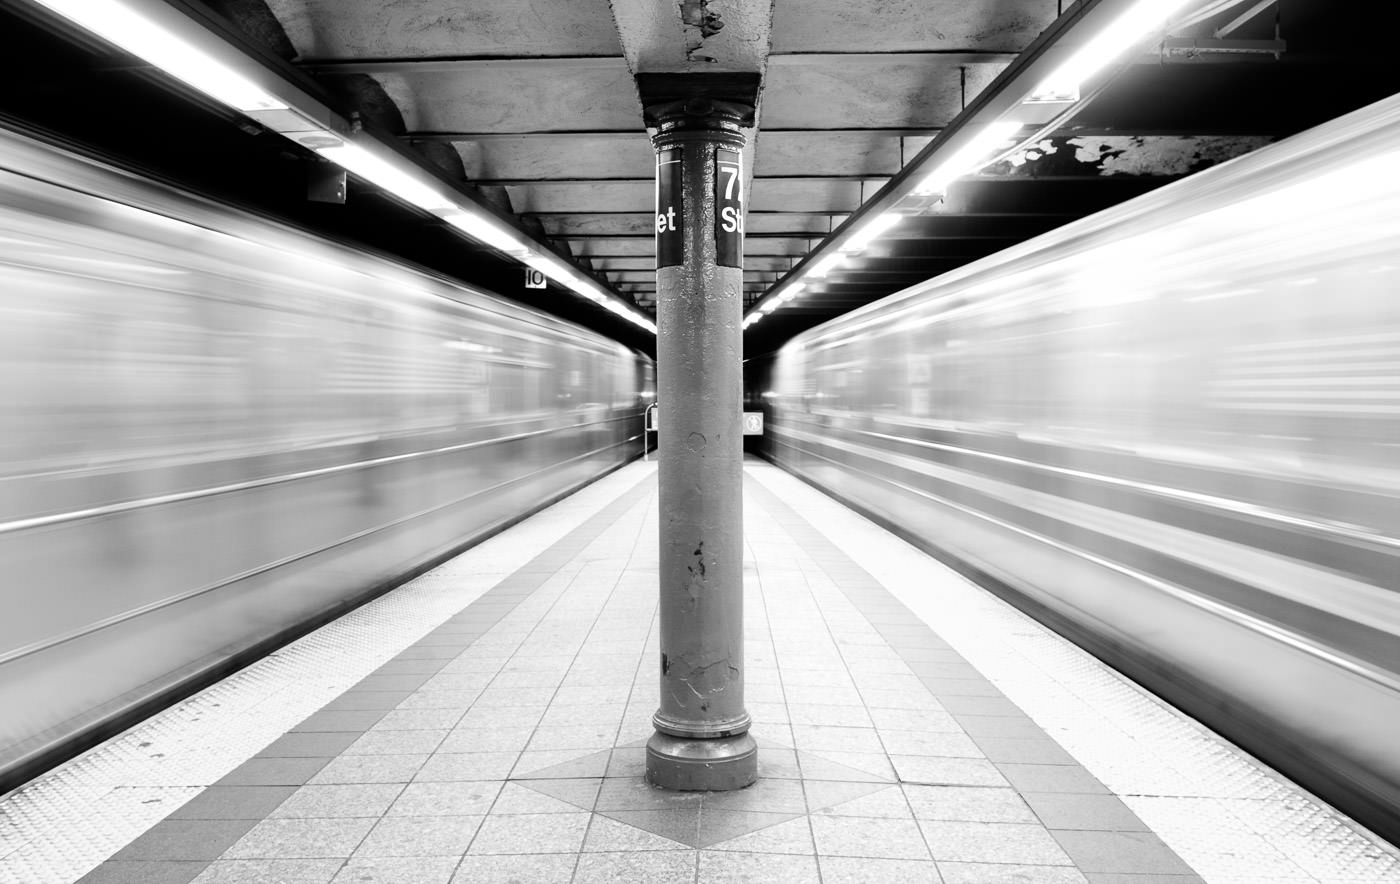 NYC-U-Bahnen rasen auf beiden Seiten des Bahnsteigs vorbei und schaffen verschwommenen Raum um das Zentrum